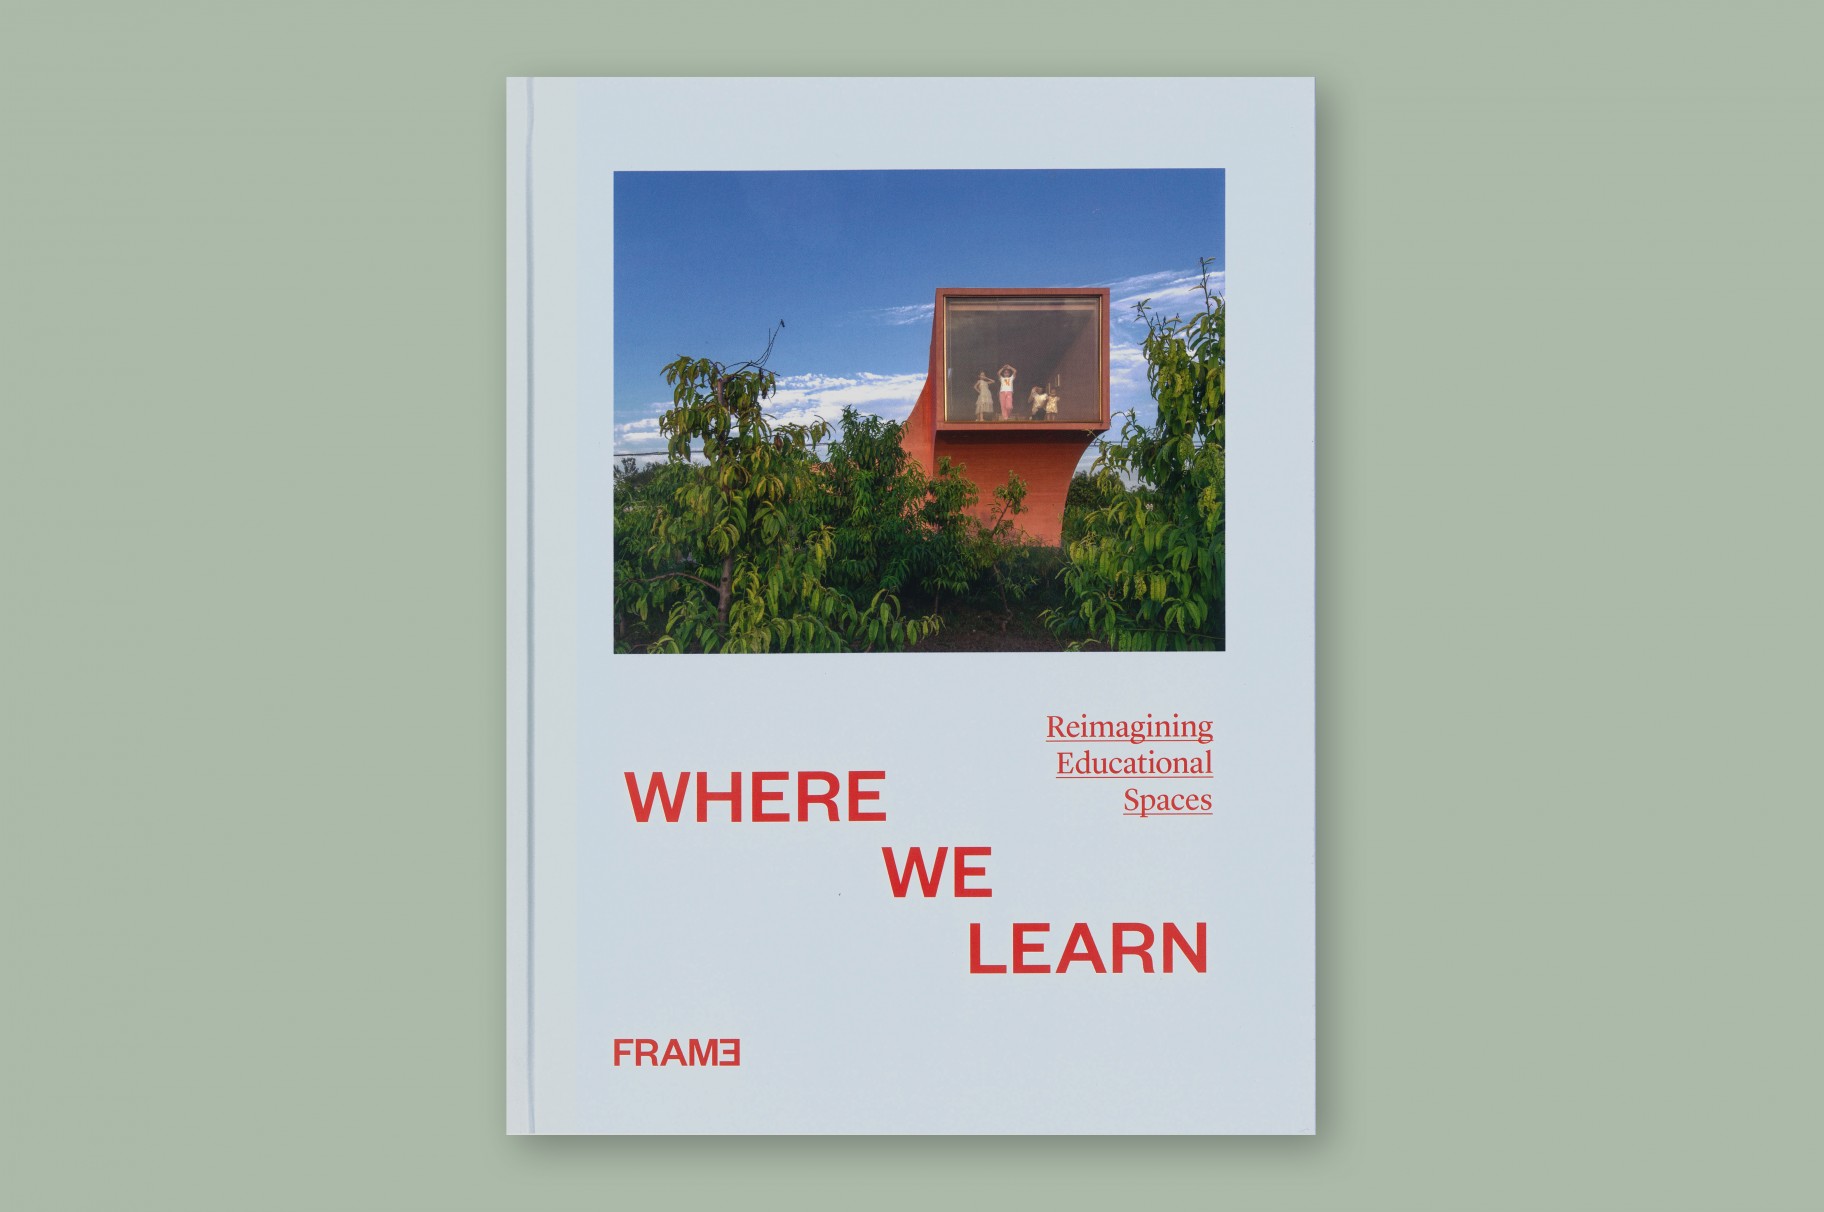 École maternelle Xaveriuscollege Borgerhout dans le livre 'When we learn' de FRAME